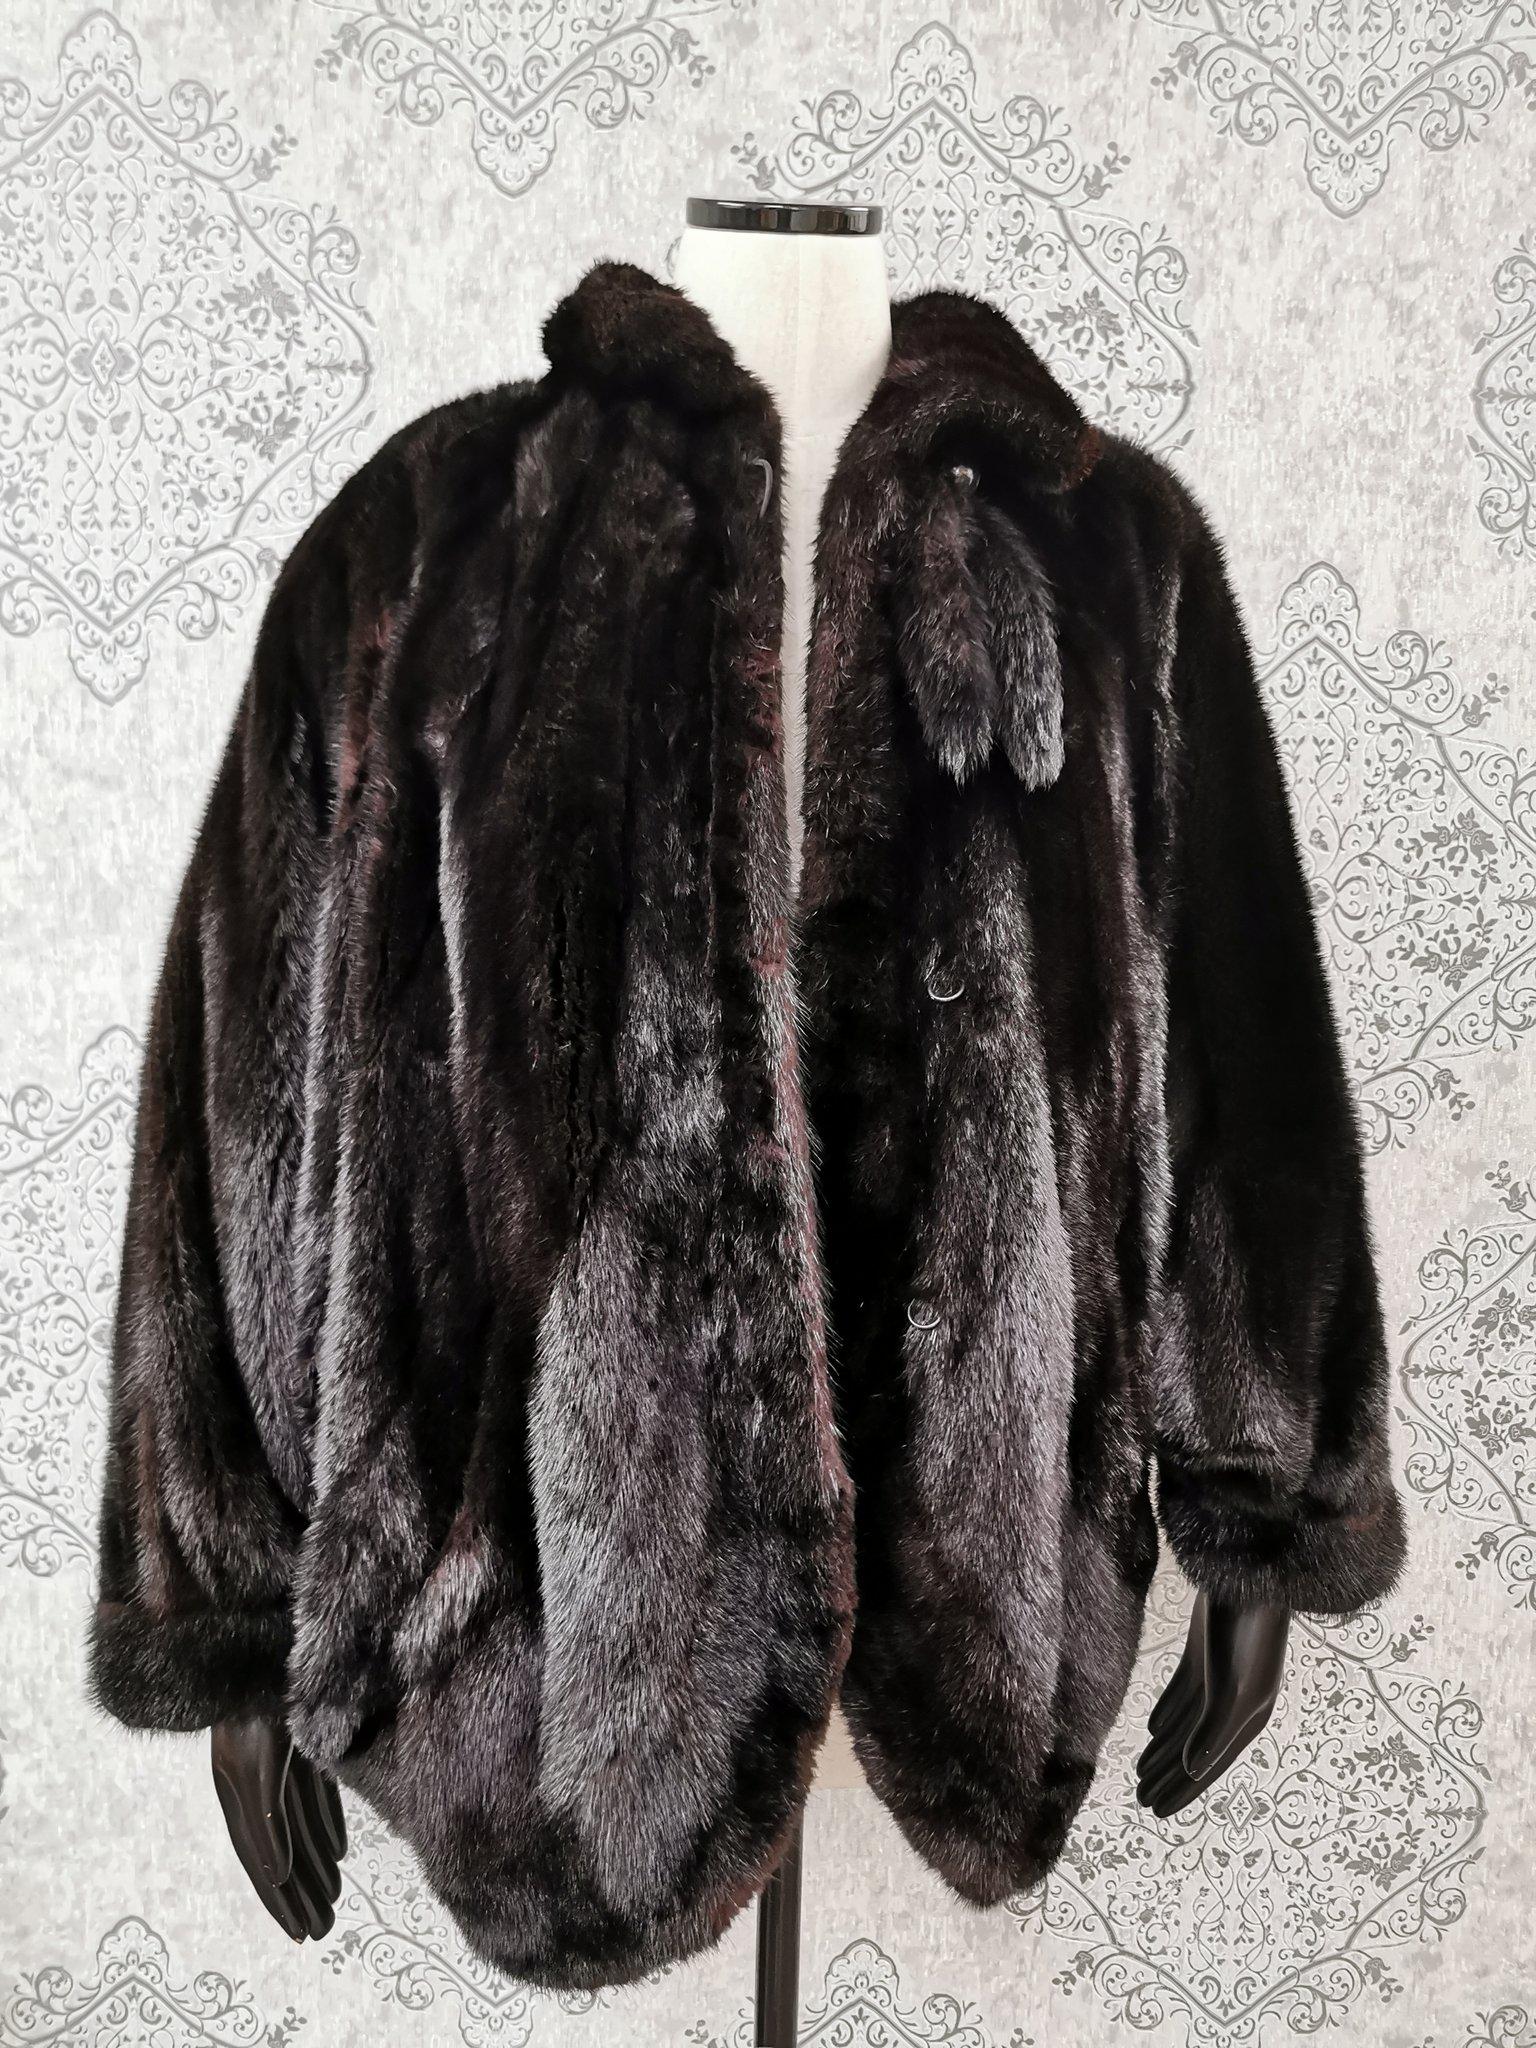 Black Brand new black mink fur coat size XL